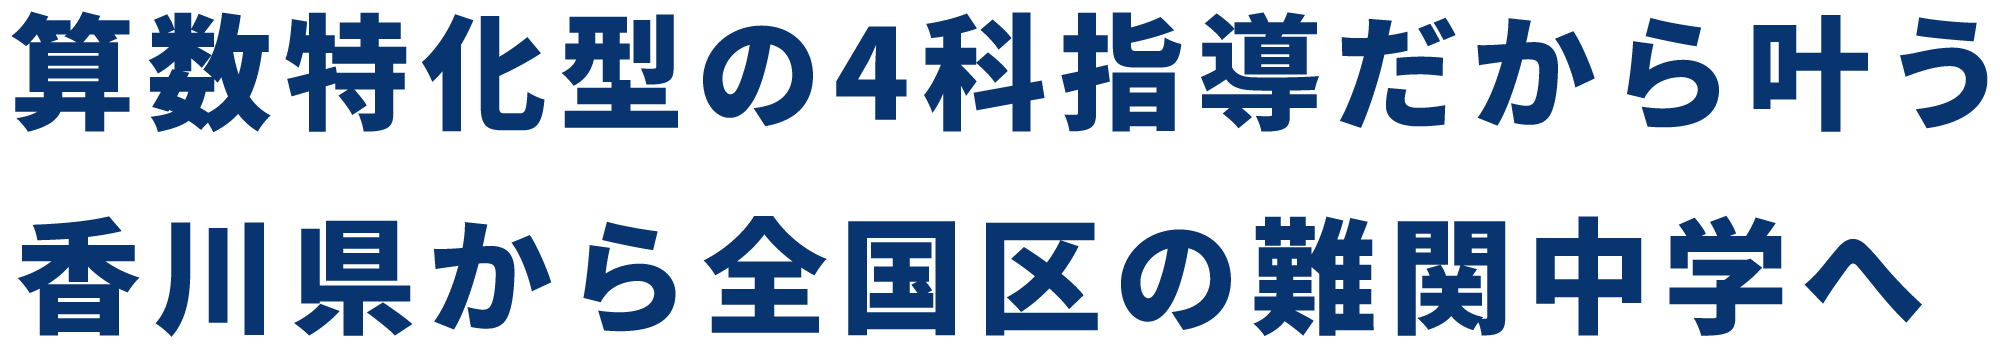 算数特化型の4教科指導だから叶う、香川県から全国区の難関中学へ